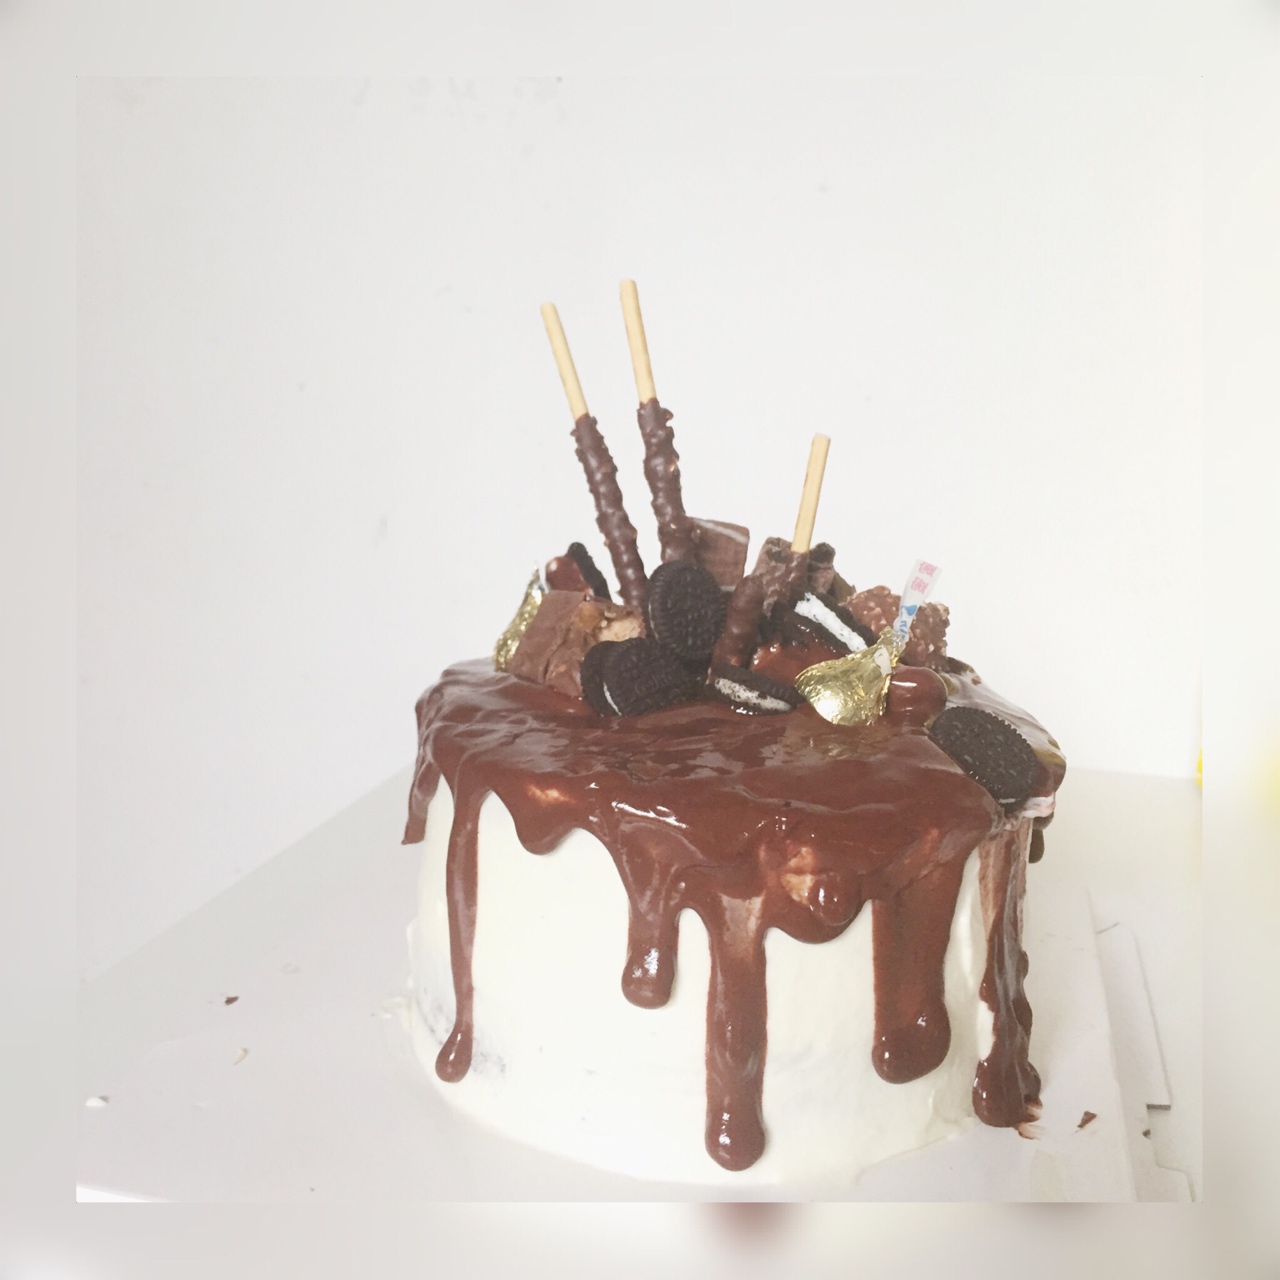 风靡欧美的滴落蛋糕~巧克力盛宴dripping cake